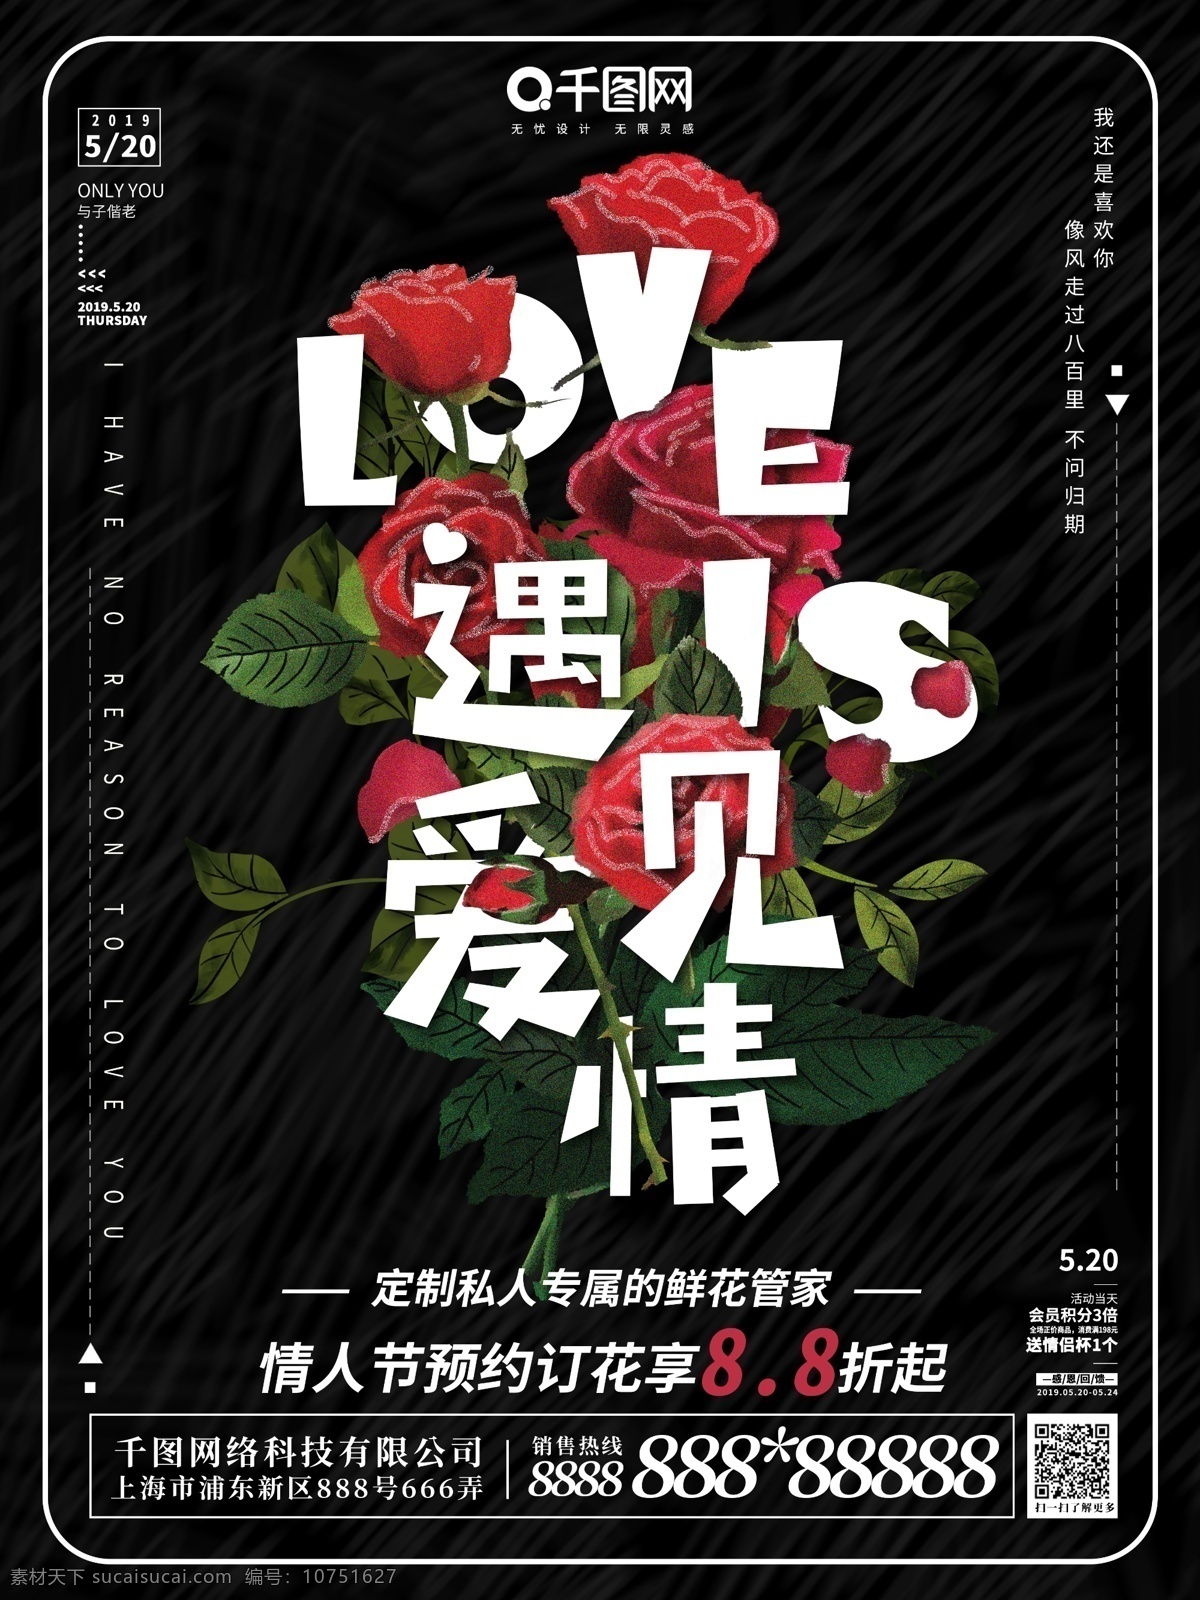 原创 插画 遇见 爱情 花 字母 趋势 海报 花与字母 玫瑰 遇见爱情 打折 鲜花 趋势海报